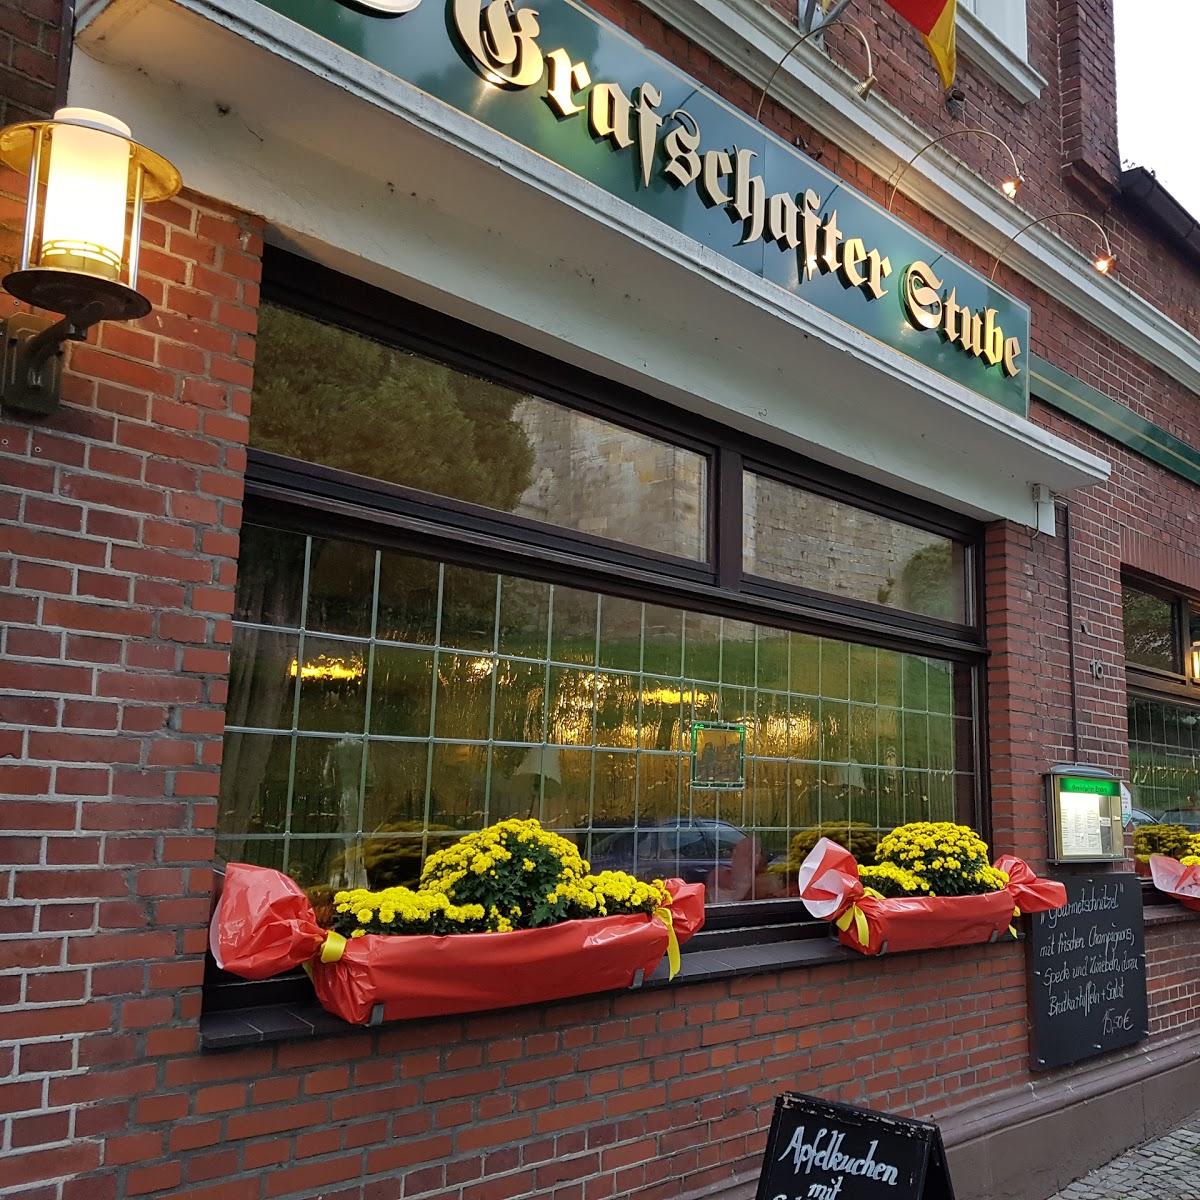 Restaurant "Gaststätte Grafschafter Stube" in  Bentheim